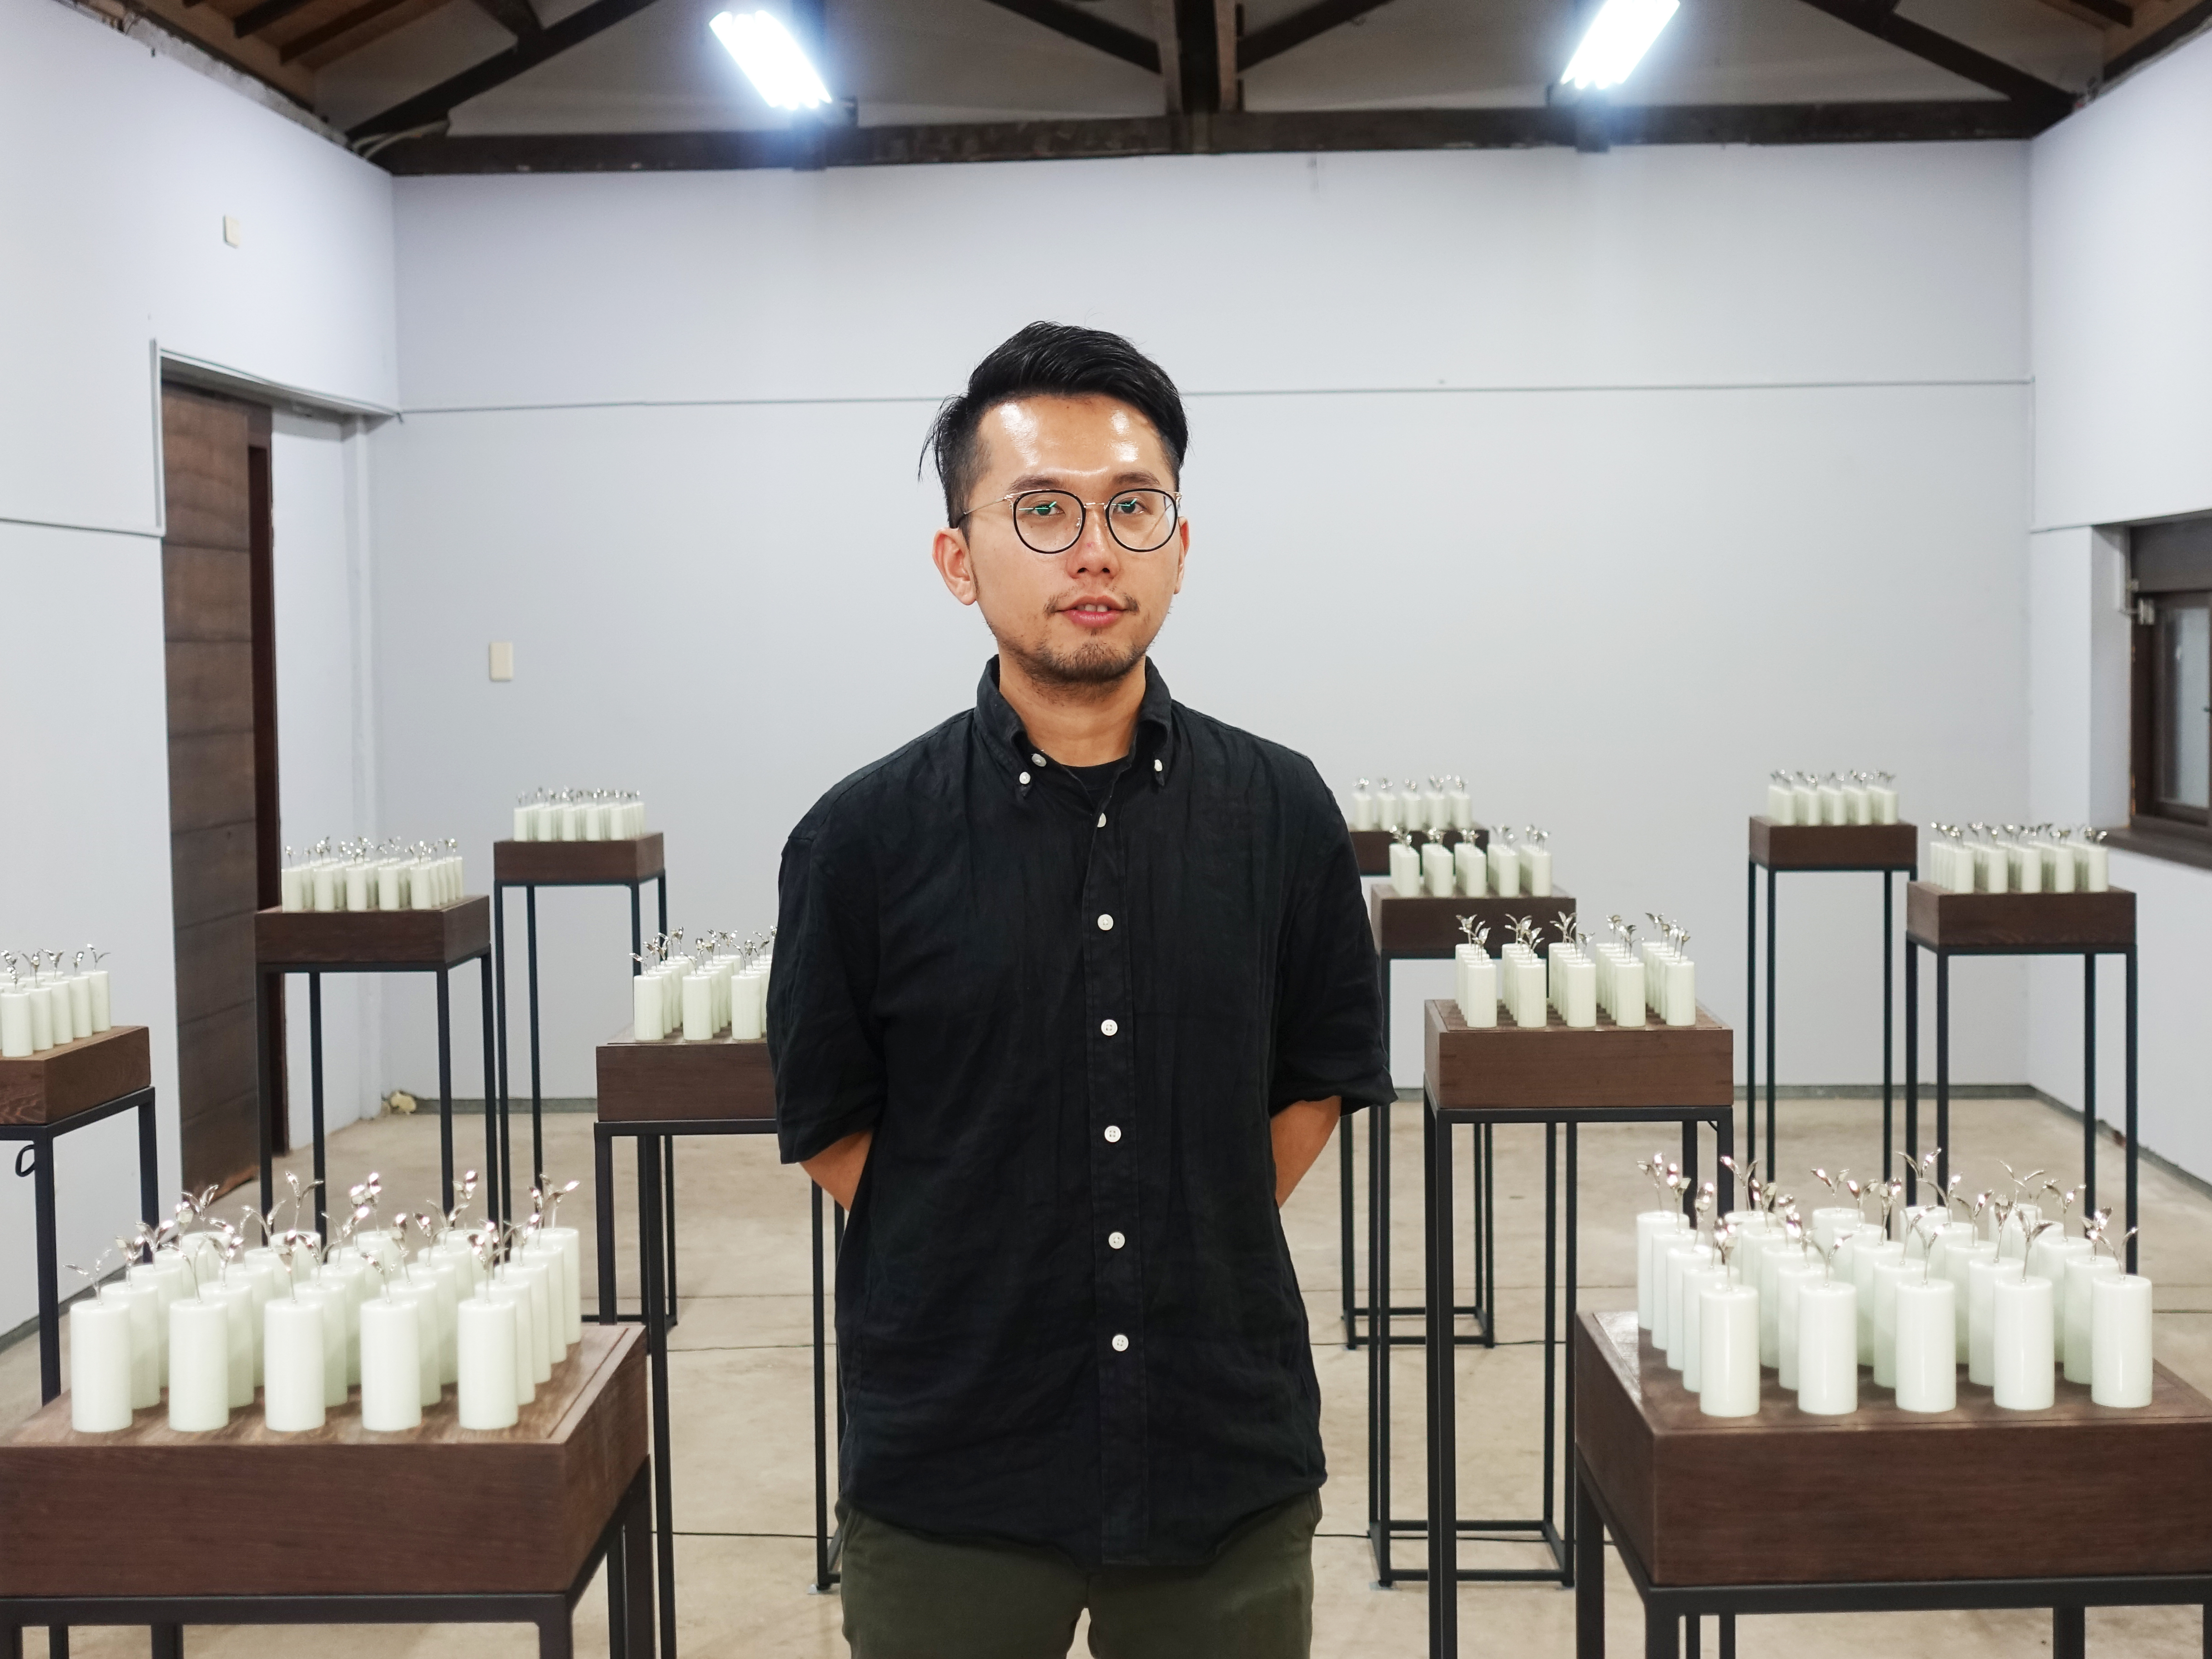 藝術家陳漢聲與參展作品《共生苗》合影。